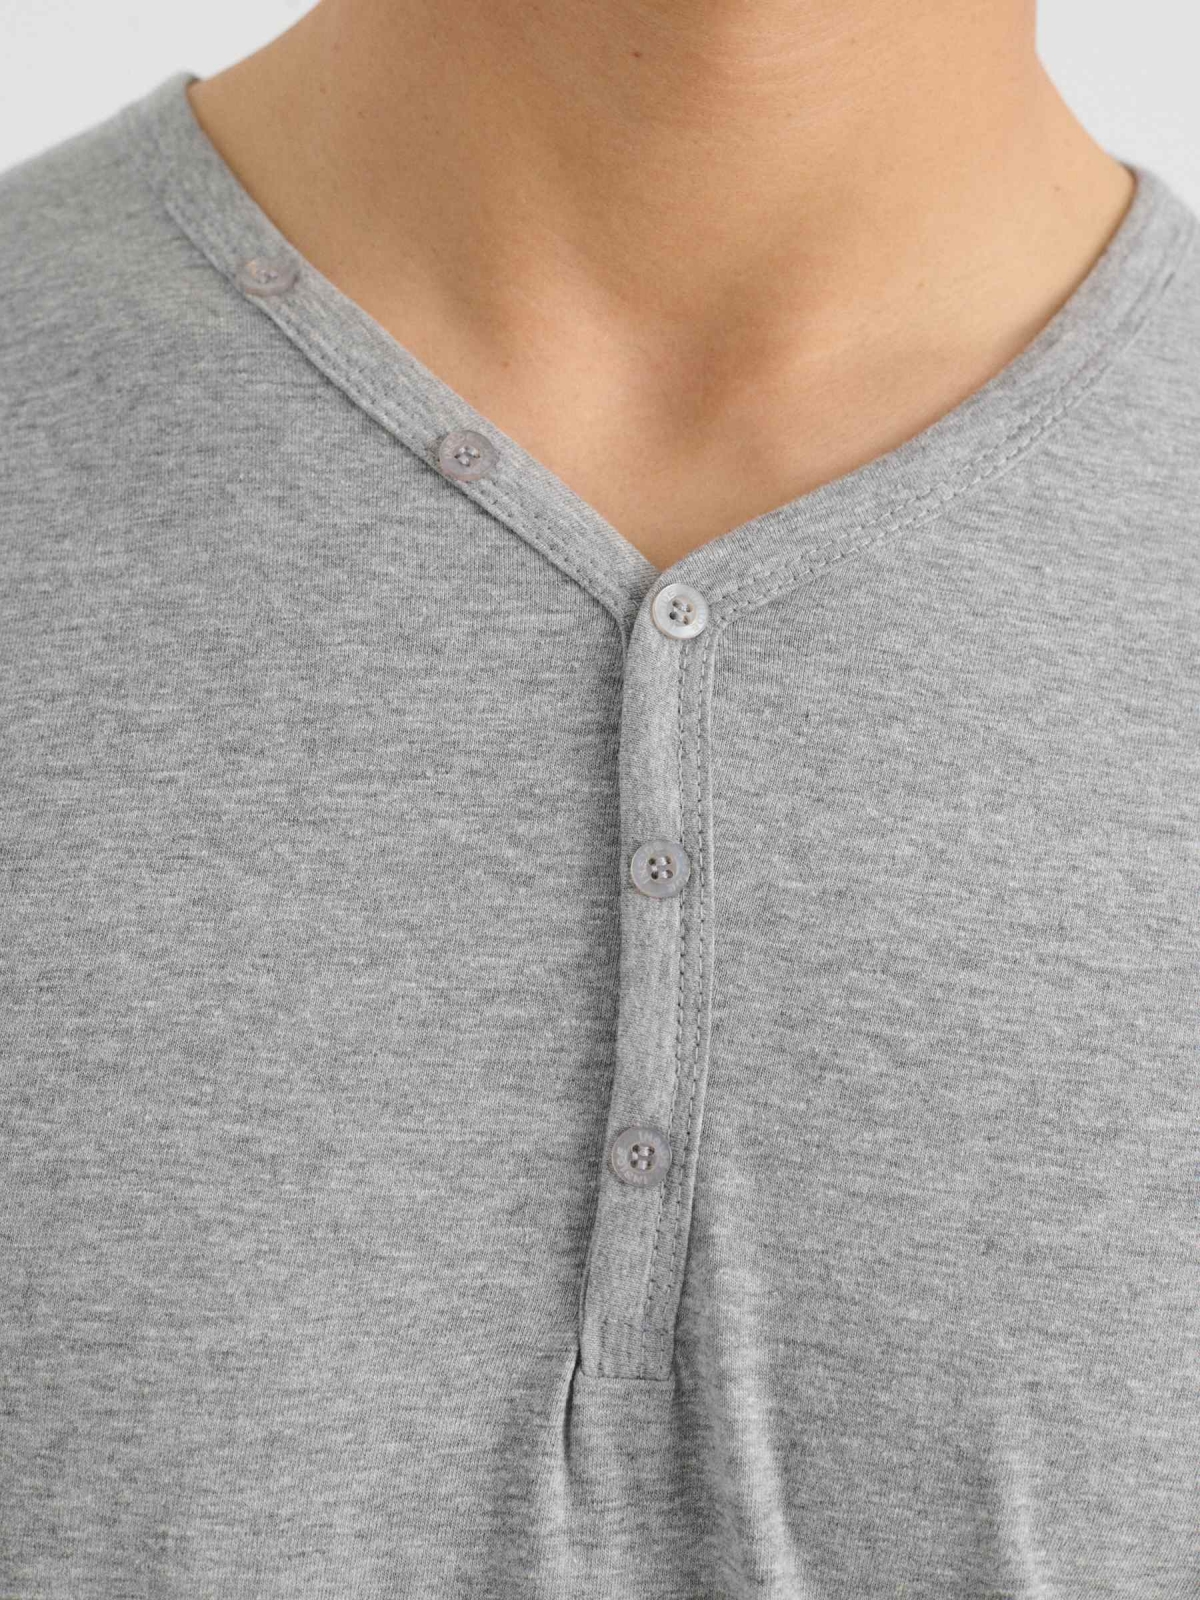 T-shirt gola com botões cinza vista detalhe